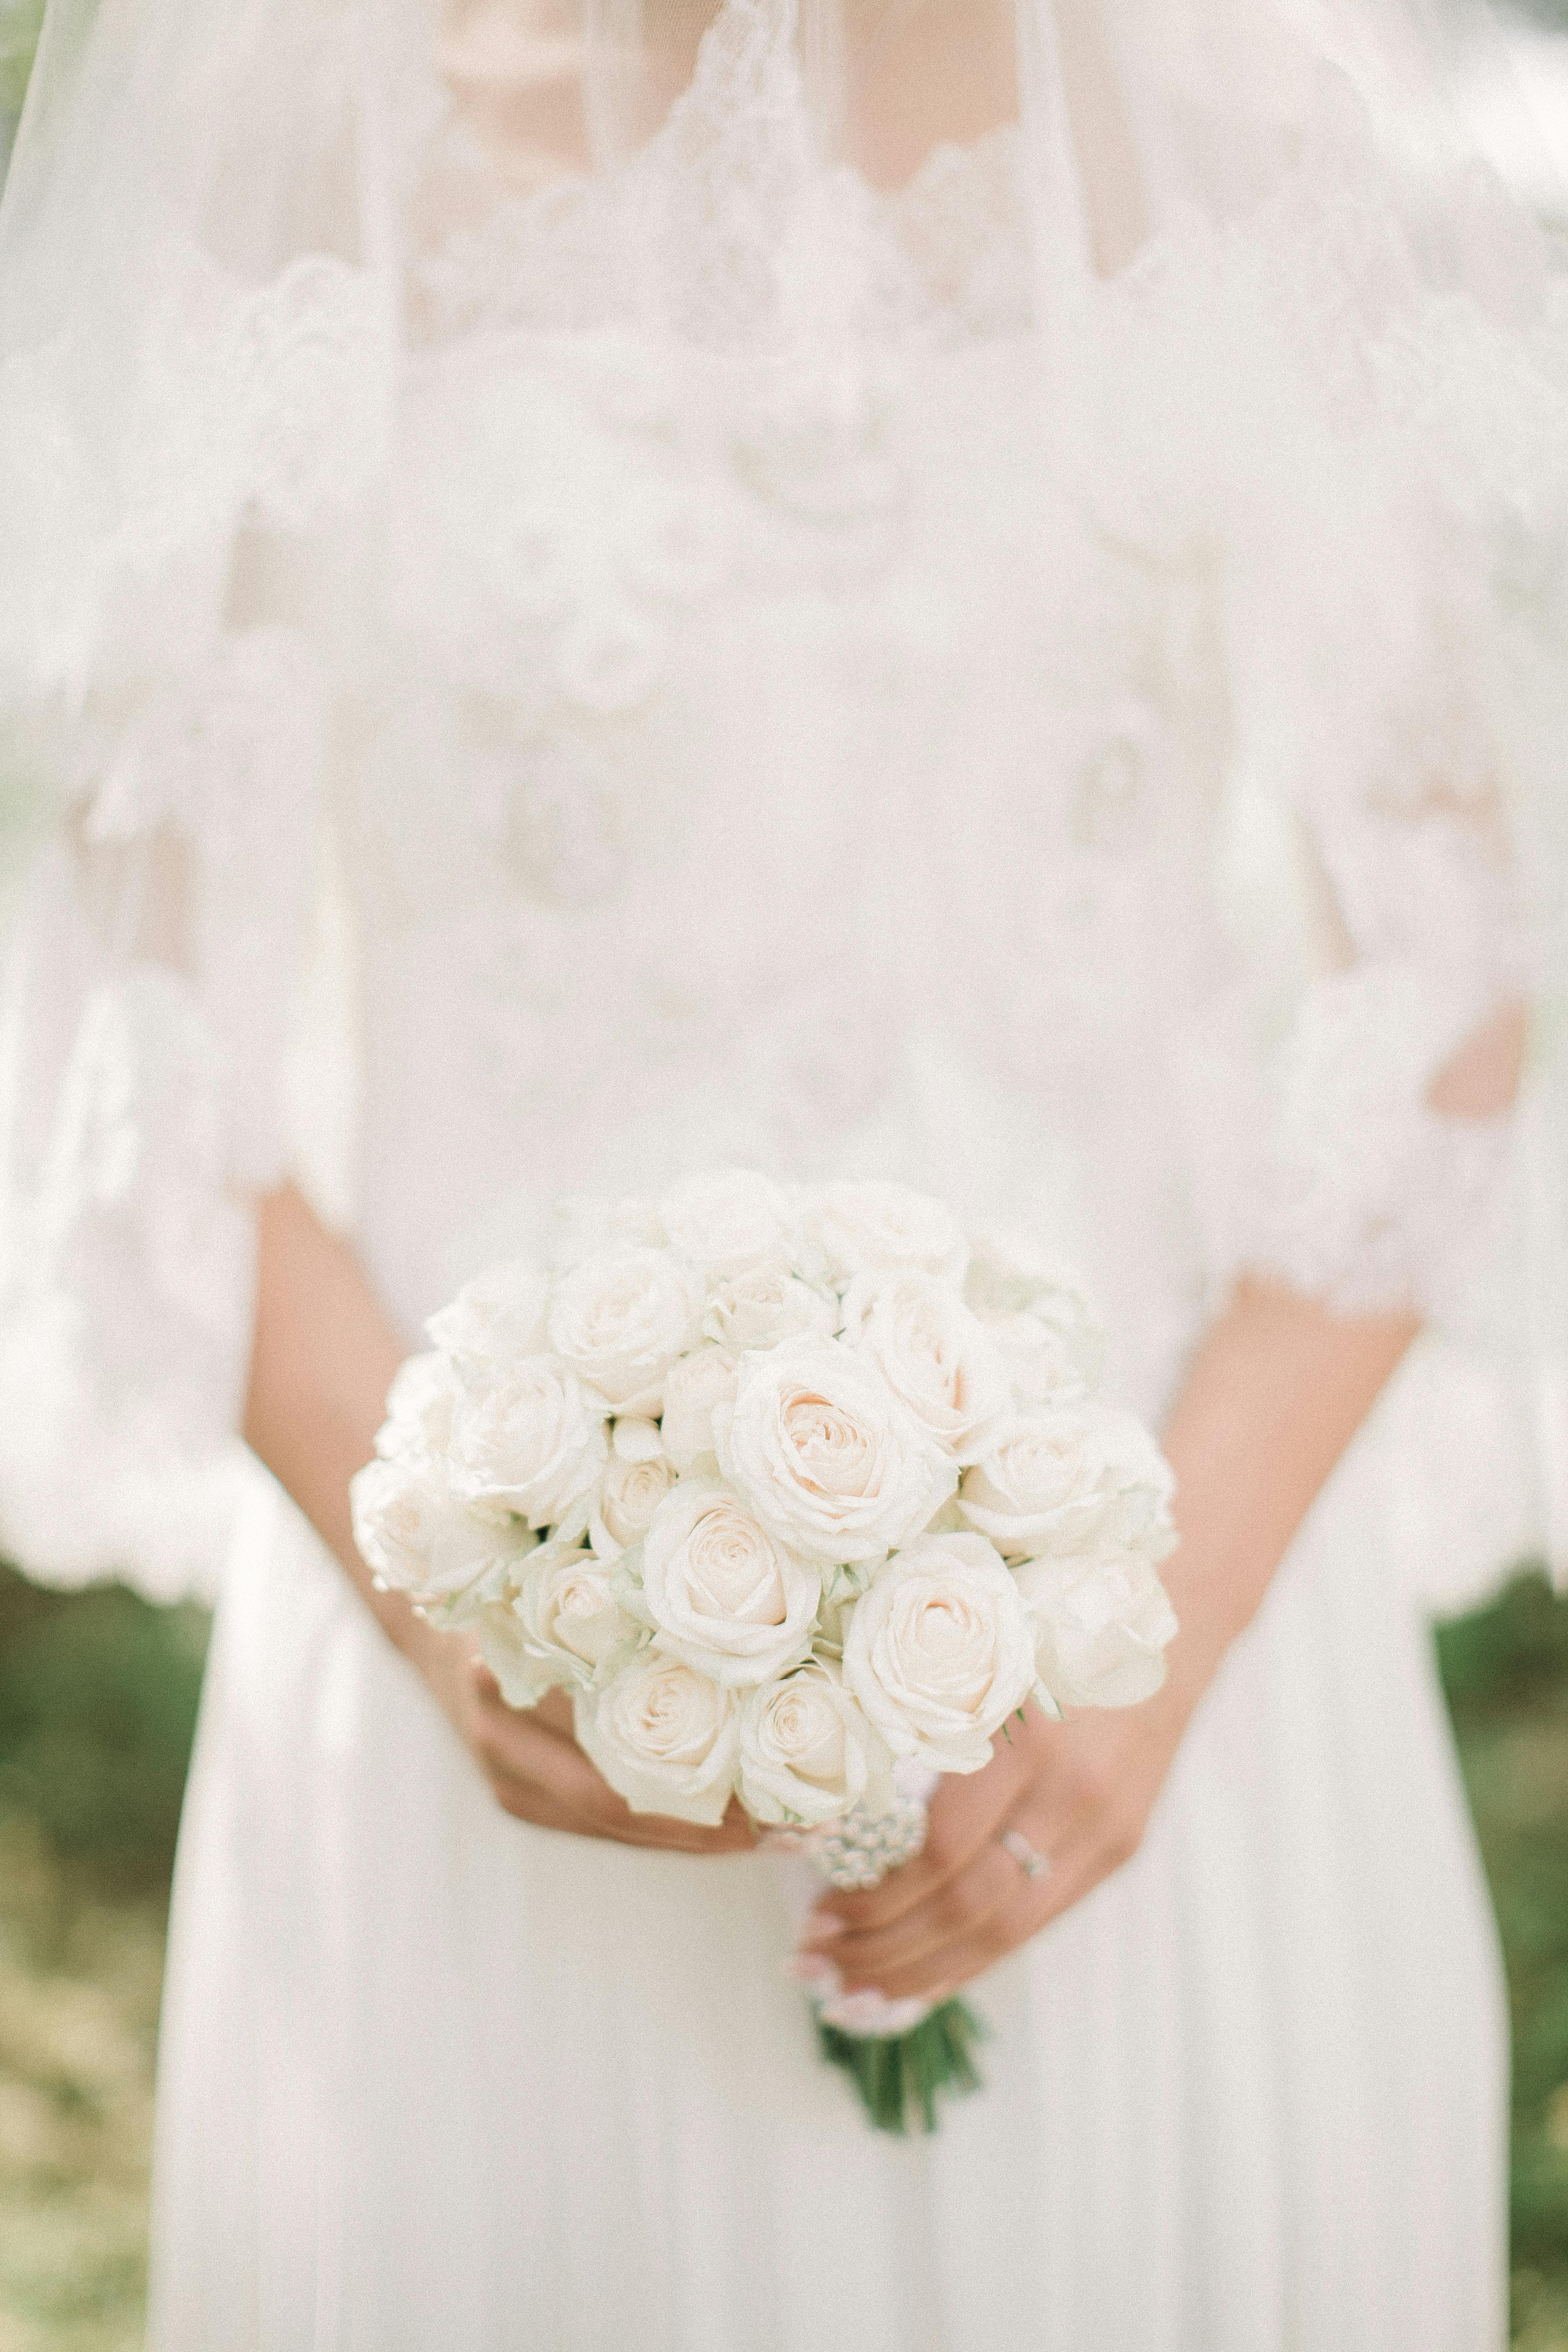 Eine Braut mit weißen Blumen | Quelle: Pexels